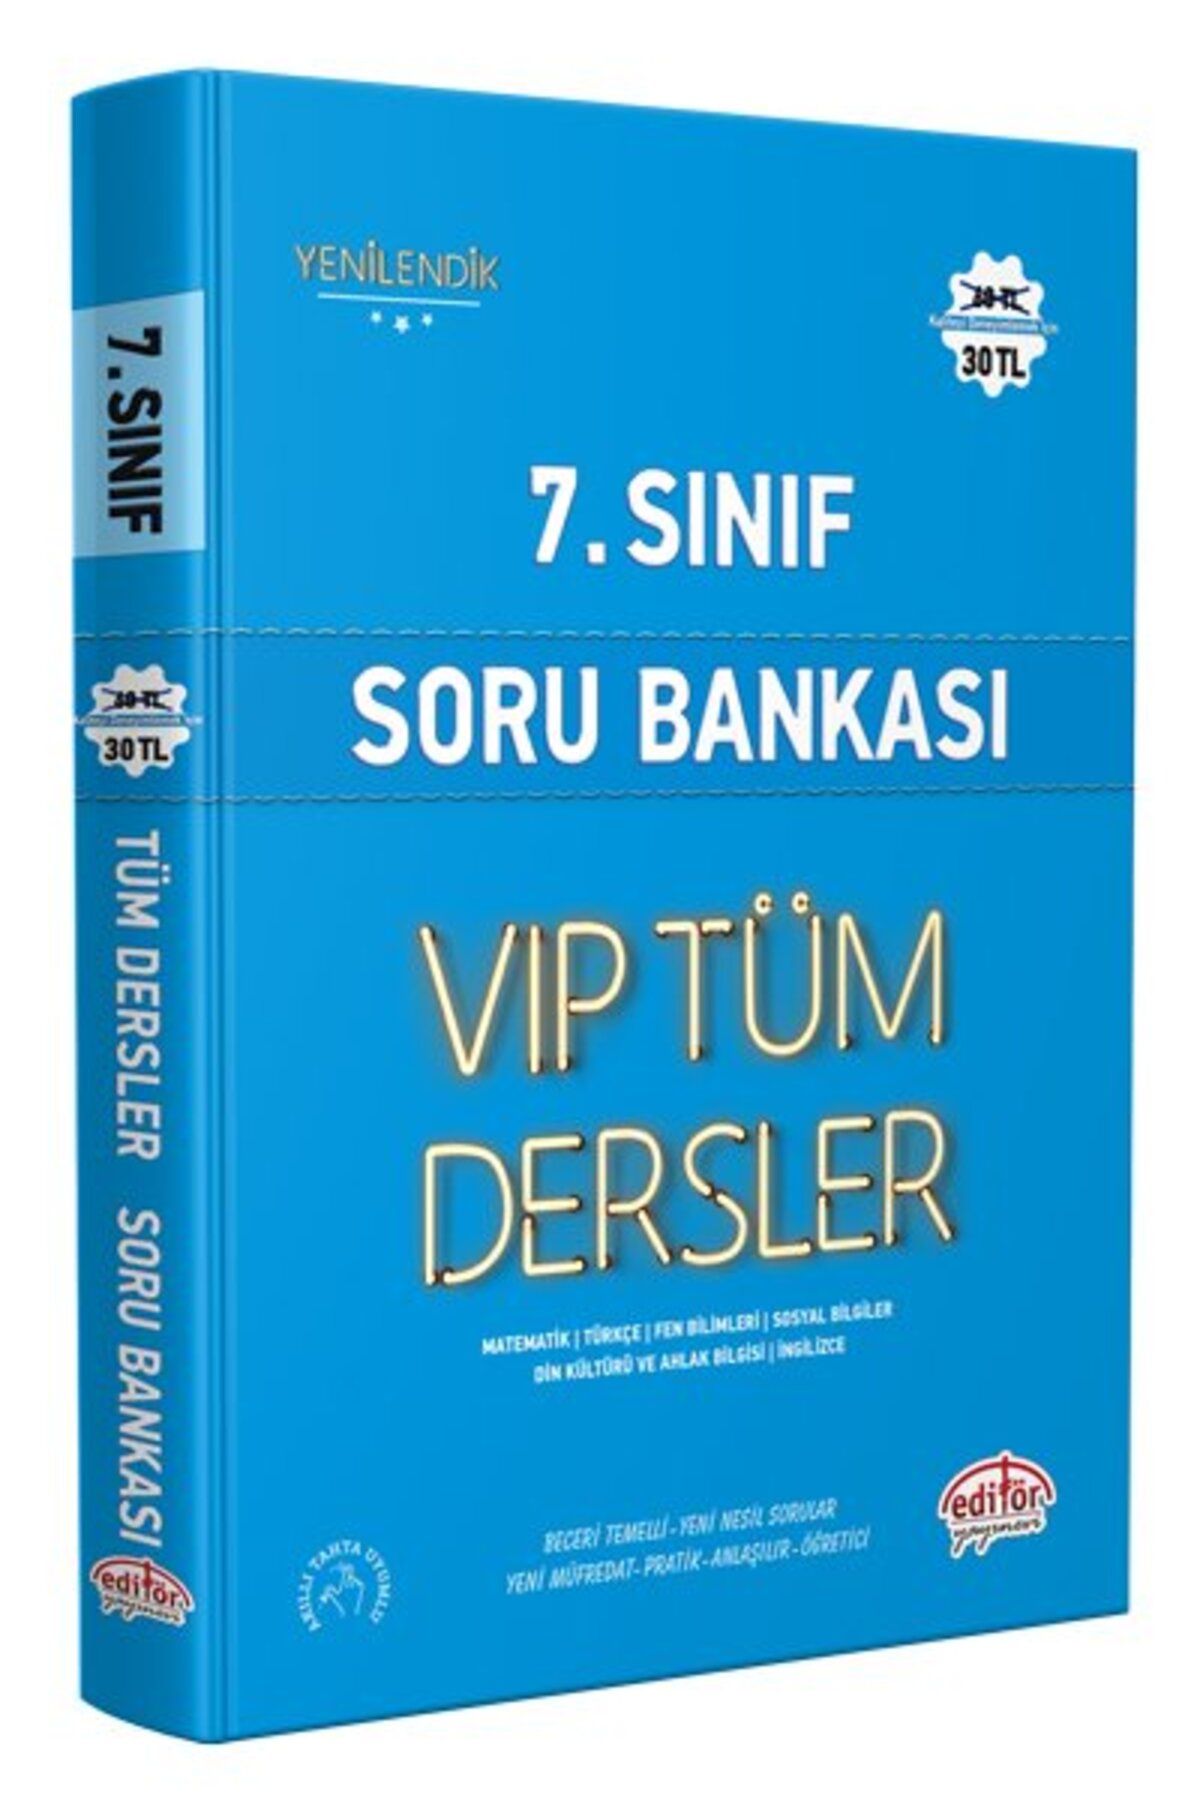 Editör Yayınları 7. Sınıf Vıp Tüm Dersler Soru Bankası Mavi Kitap - Editör Yayınevi